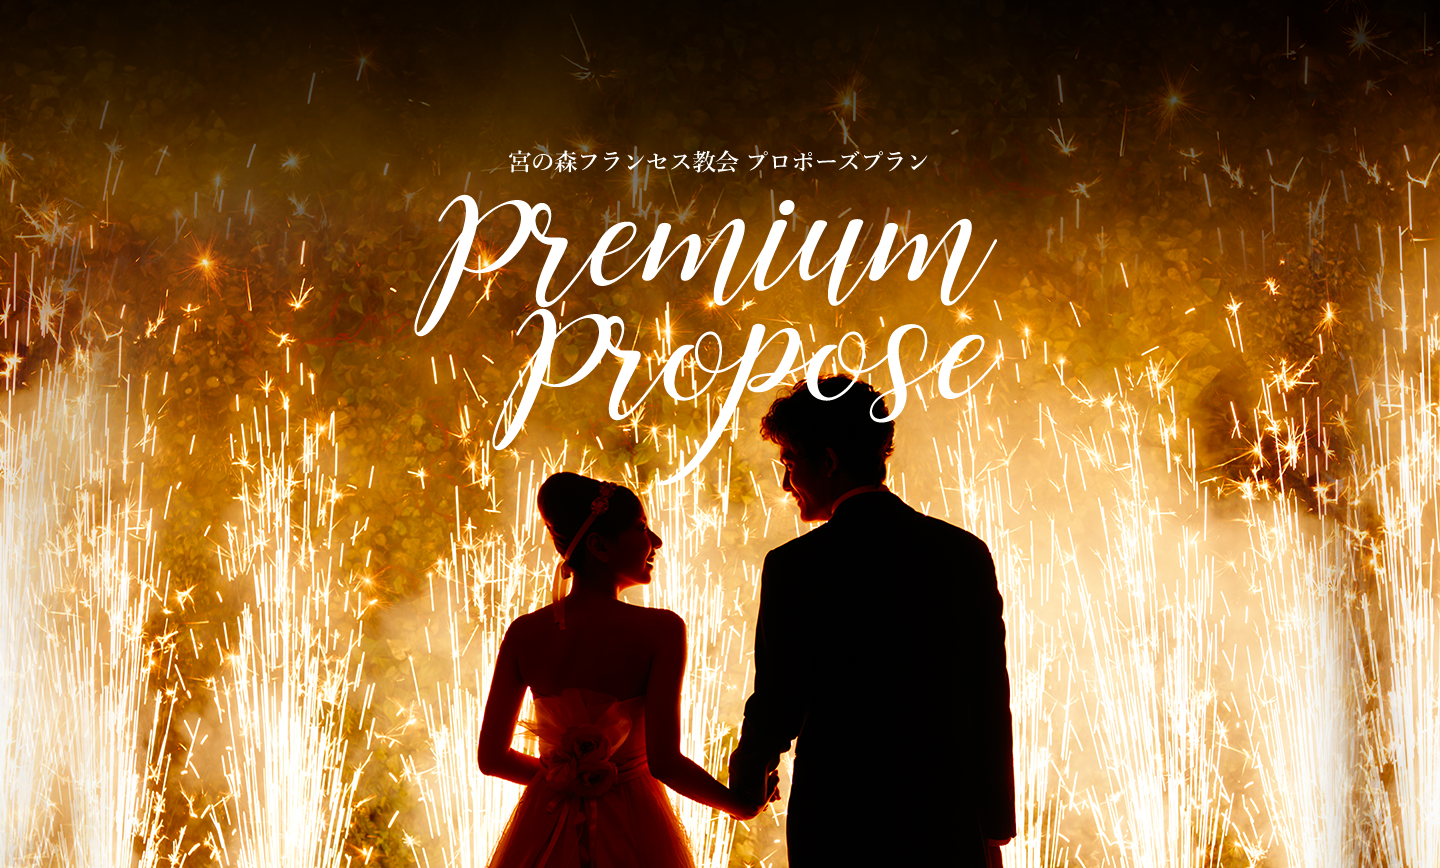 宮の森フランセス教会 プロポーズプラン 「Premium Propose 2017」